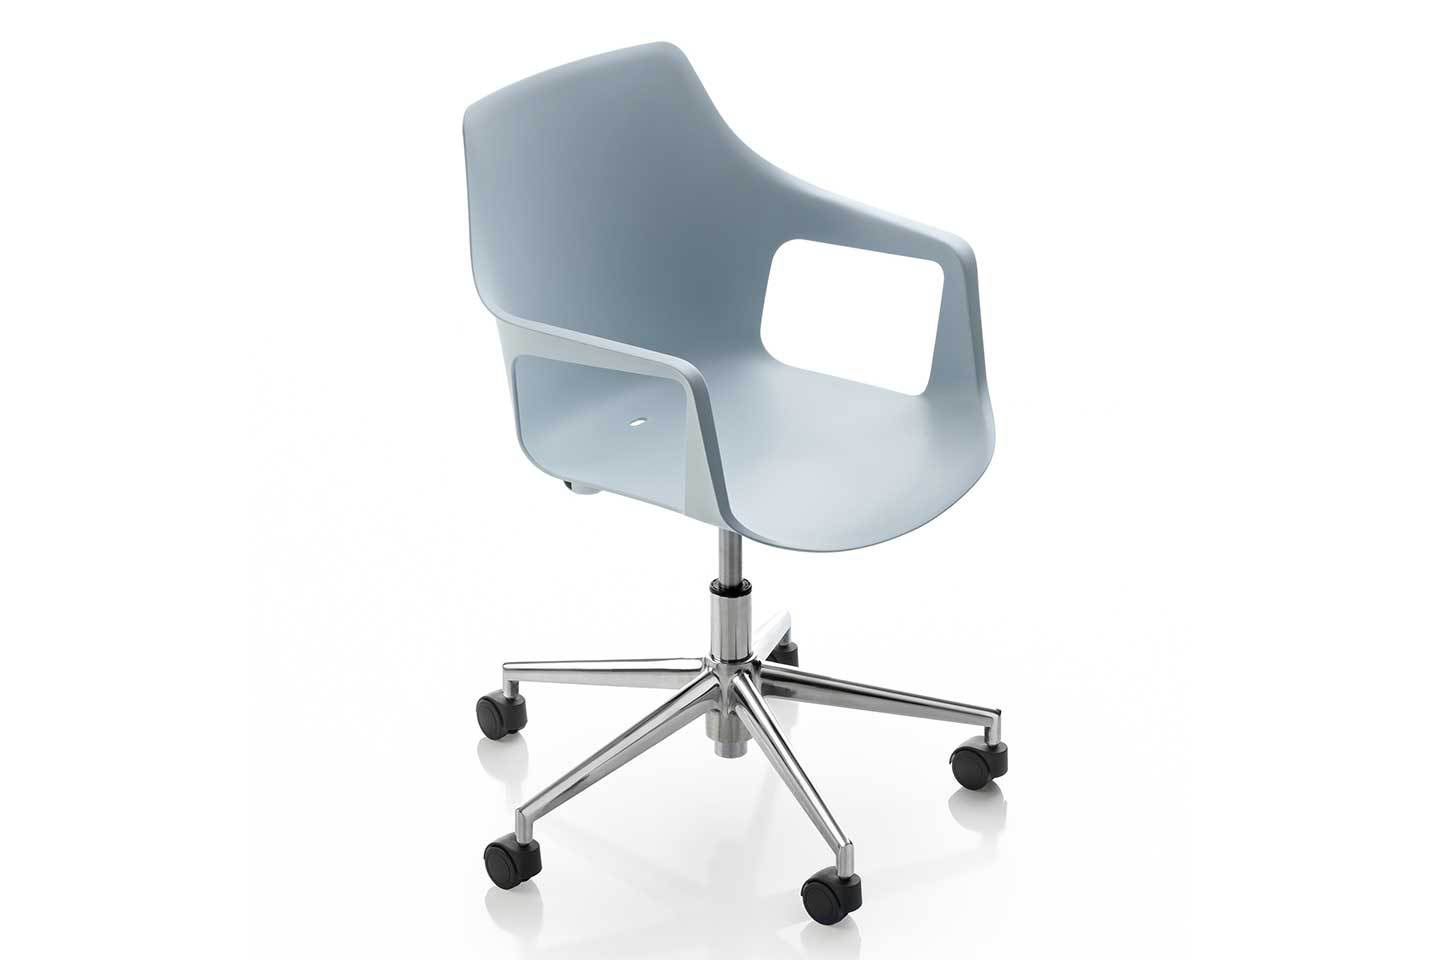 Mobili Italia_Colos VESPER 2 SW swivel chair